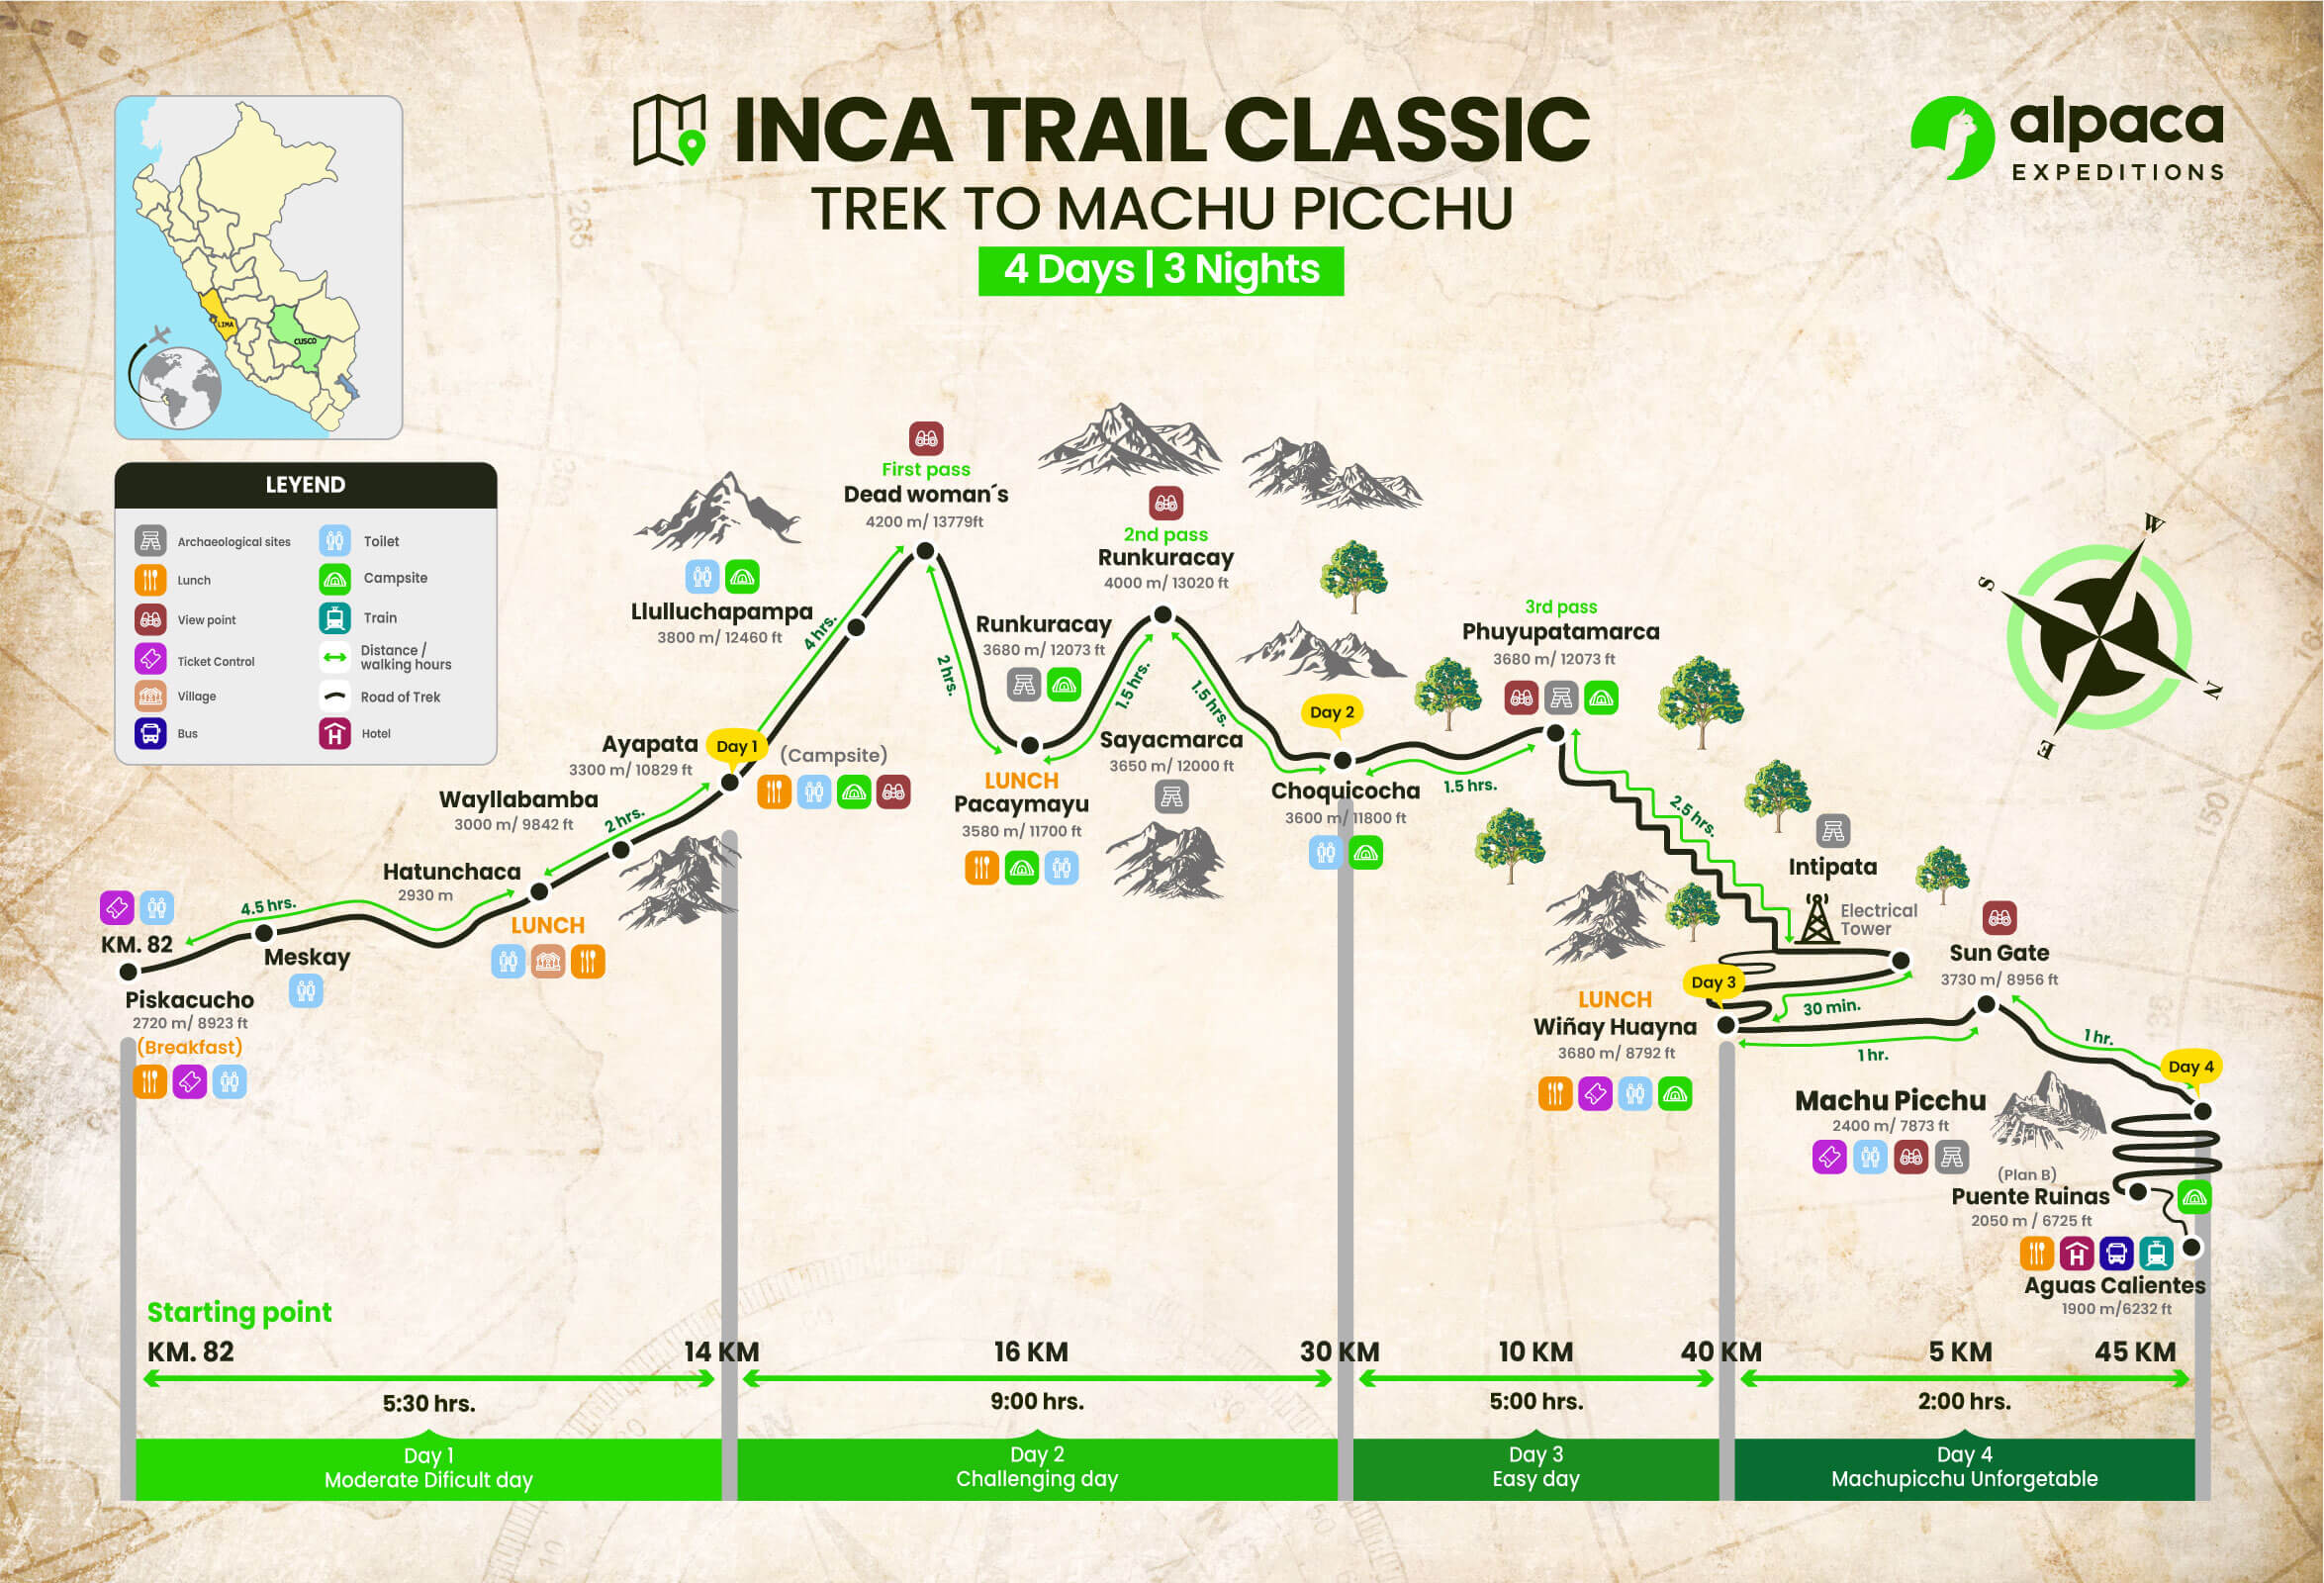 Camino del Inca Tour grupal (Clásico) 4D/3N